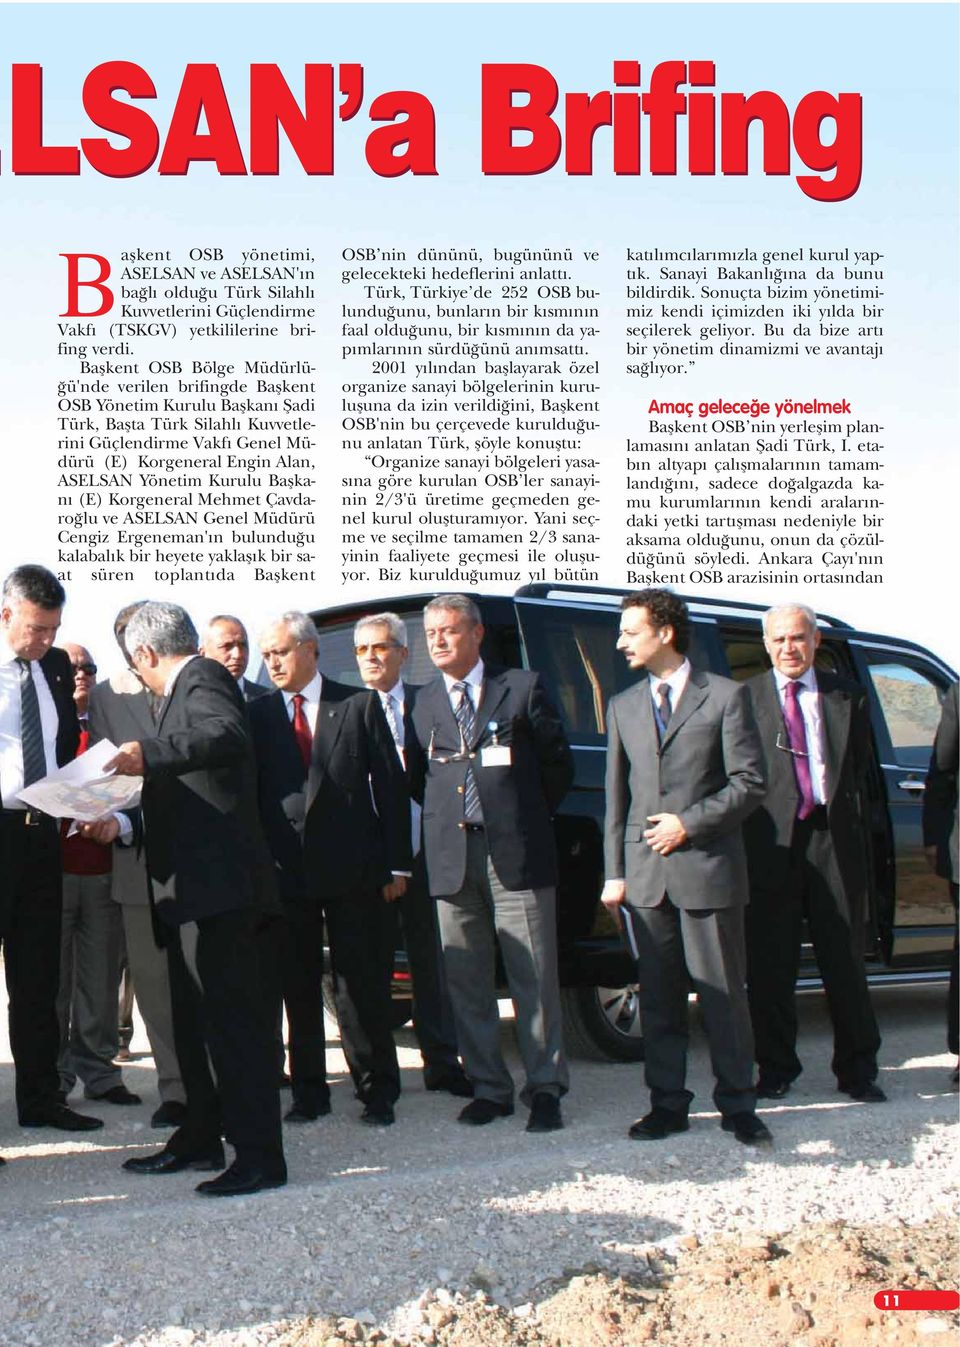 Yönetim Kurulu Baflkan (E) Korgeneral Mehmet Çavdaro lu ve ASELSAN Genel Müdürü Cengiz Ergeneman' n bulundu u kalabal k bir heyete yaklafl k bir saat süren toplant da Baflkent OSB nin dününü,